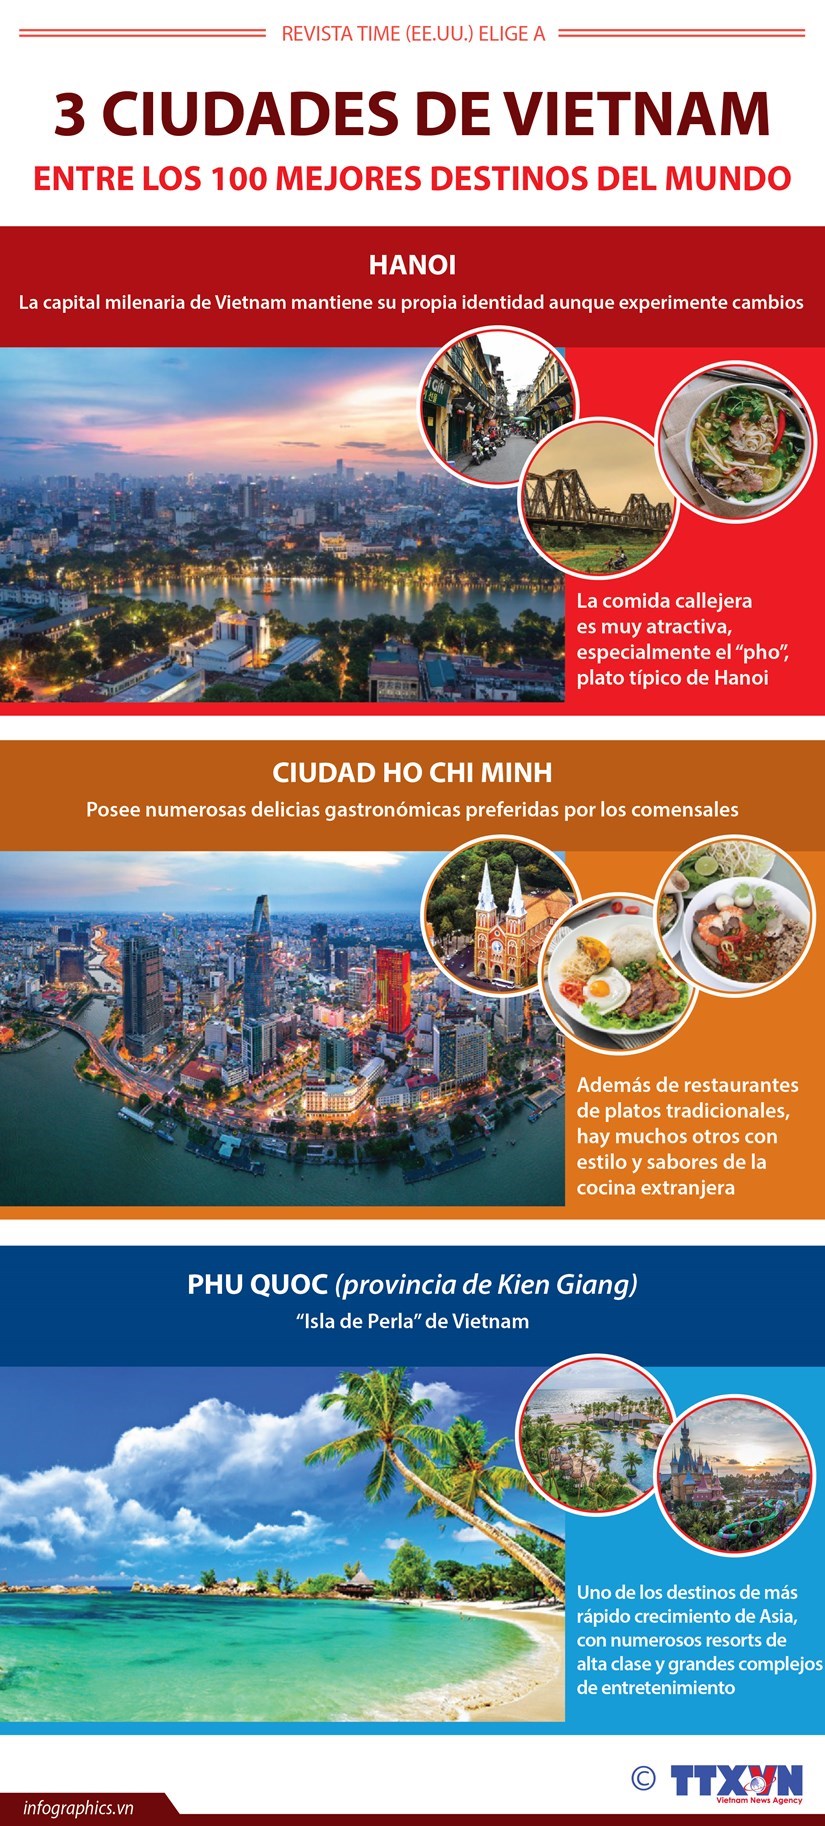 Tres ciudades de Vietnam entre los 100 mejores destinos del mundo hinh anh 1